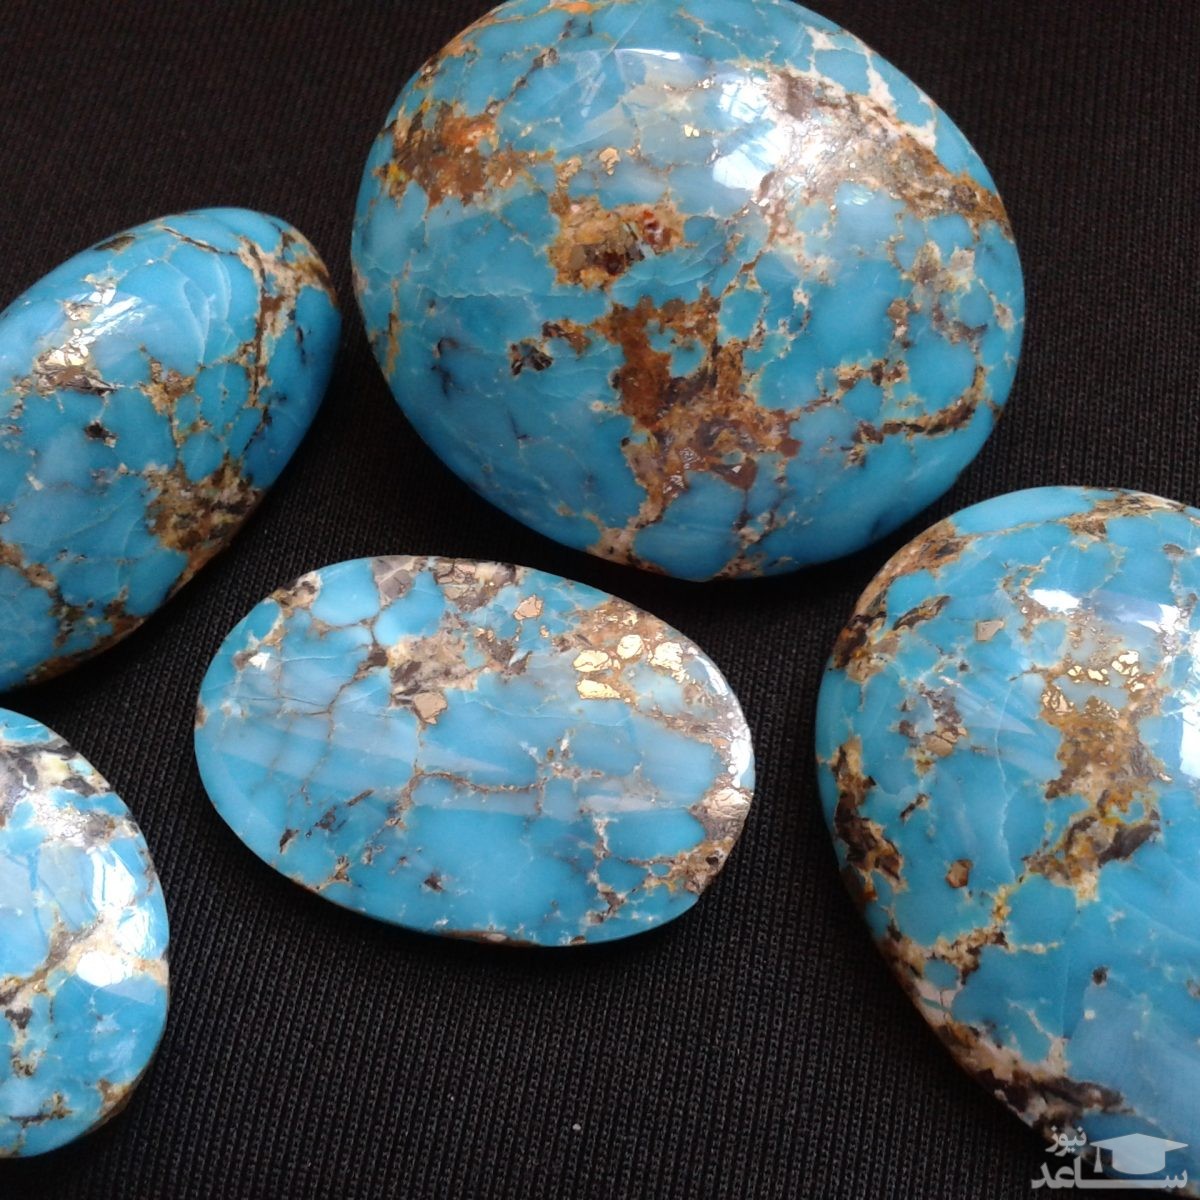 نکاتی مهم در مورد سنگ فیروزه که باید بدانید!